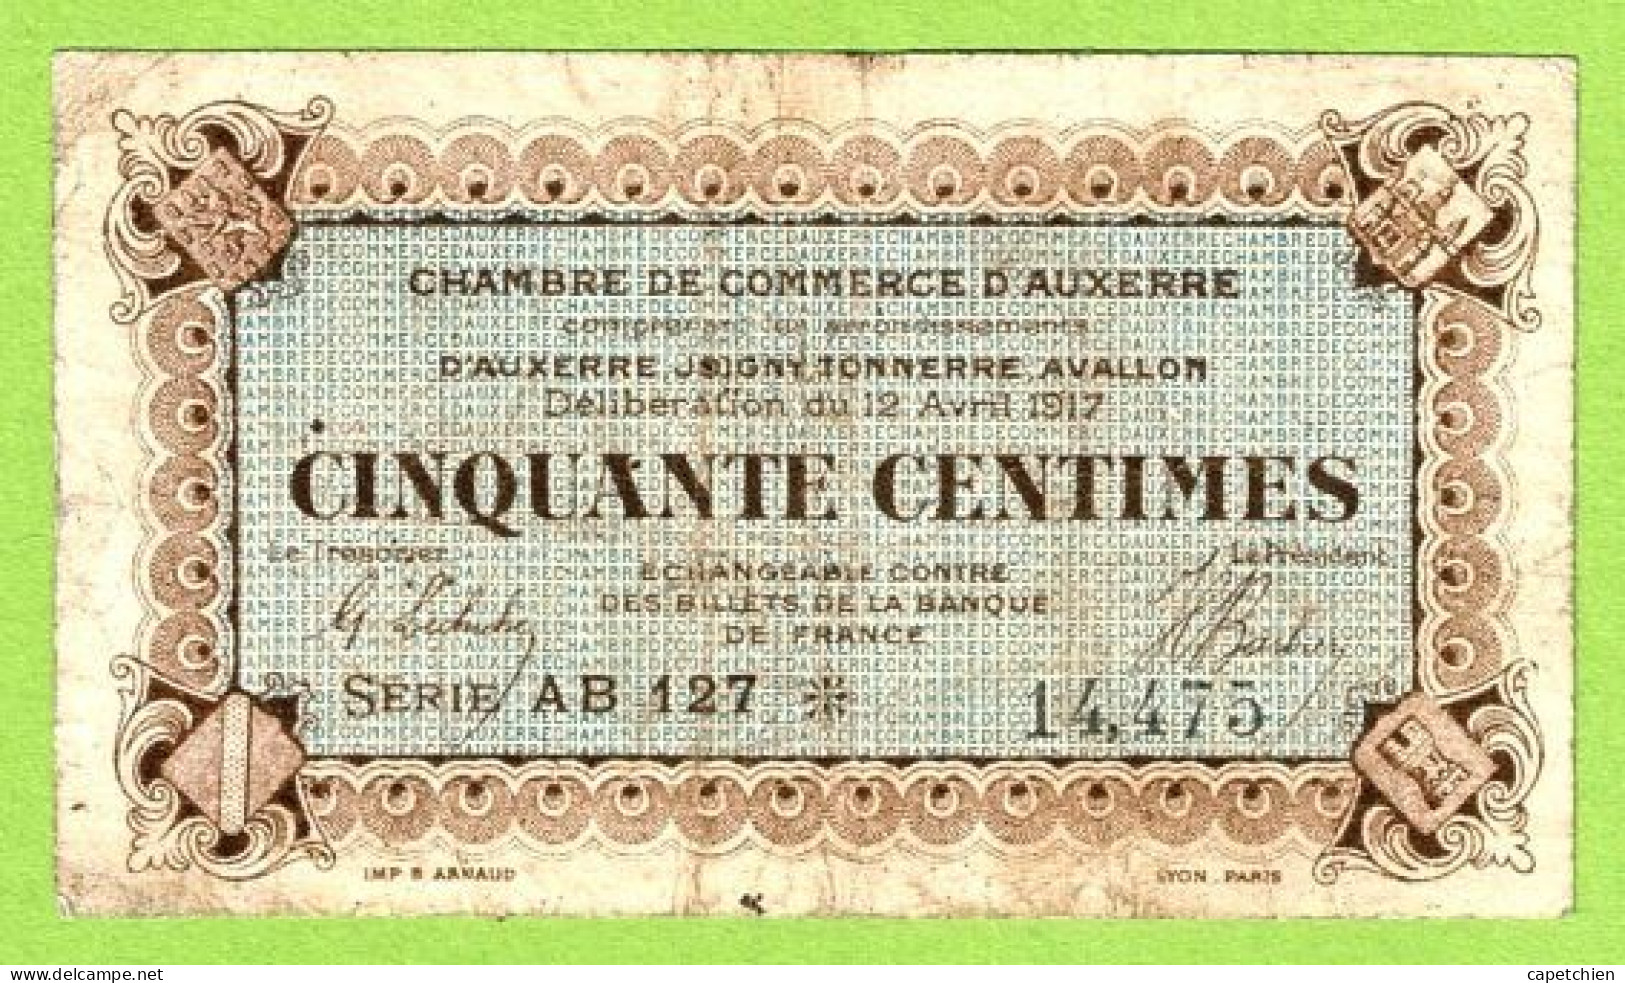 FRANCE / AUXERRE / 50 CENTIMES / 12 AVRIL 1917 / N° 14475 / SERIE  AB 127 - Camera Di Commercio